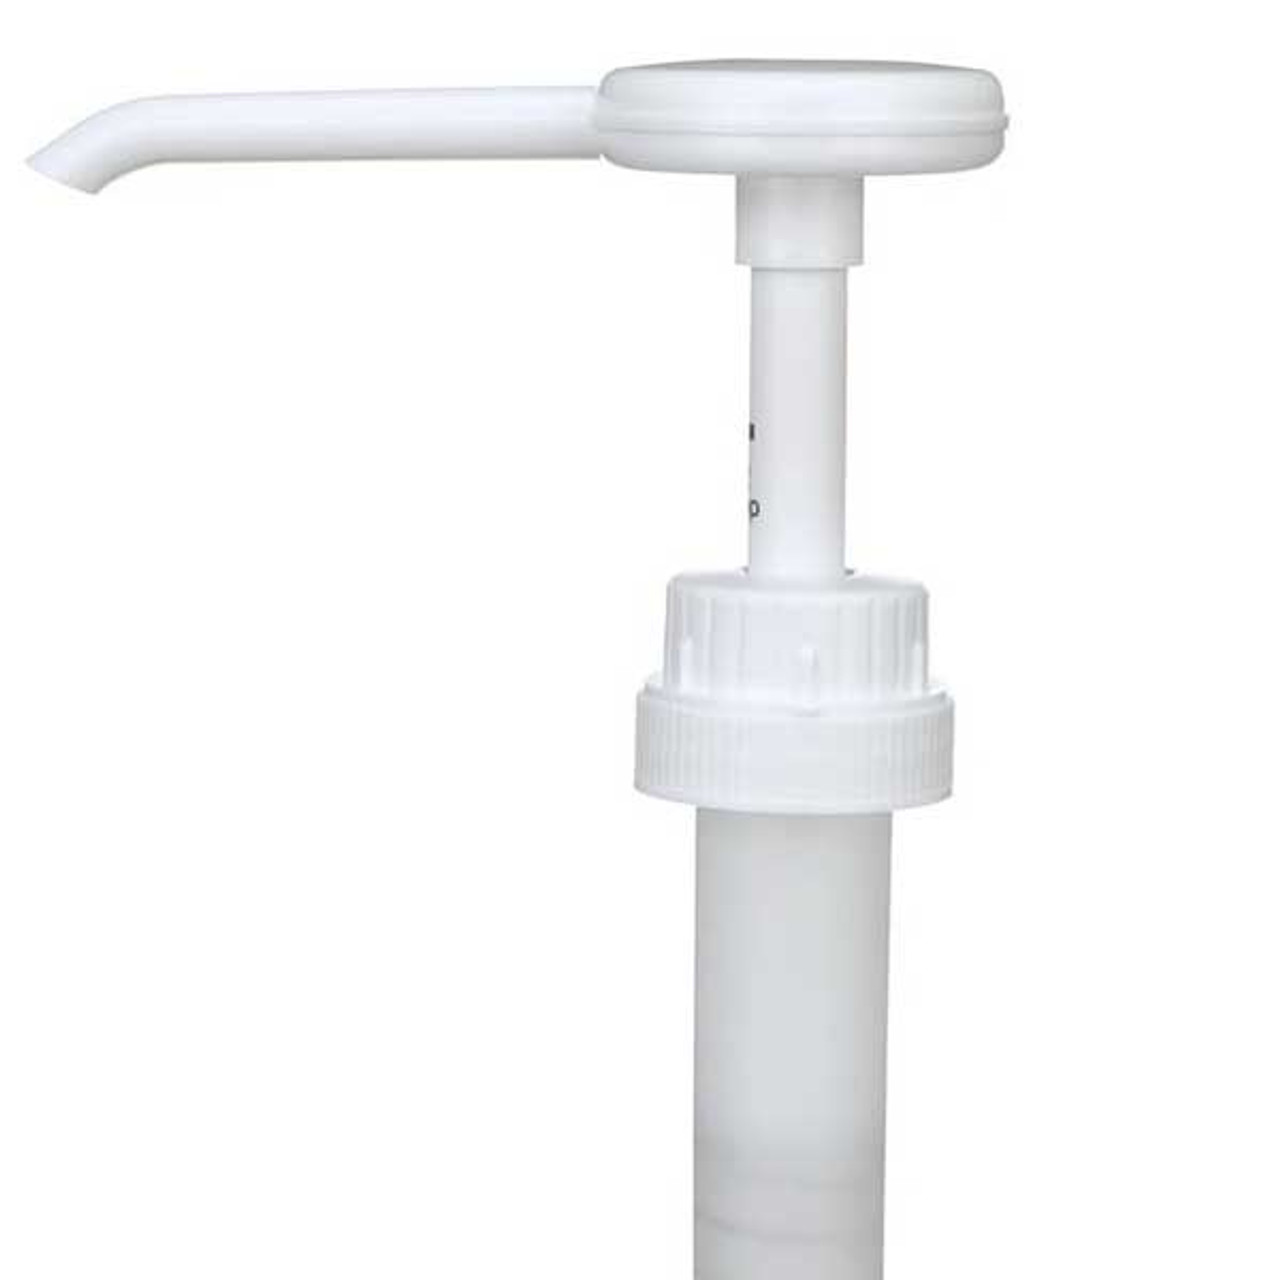 Canpalm pump cap for 291079 3.78l hand sanitizer - ea.